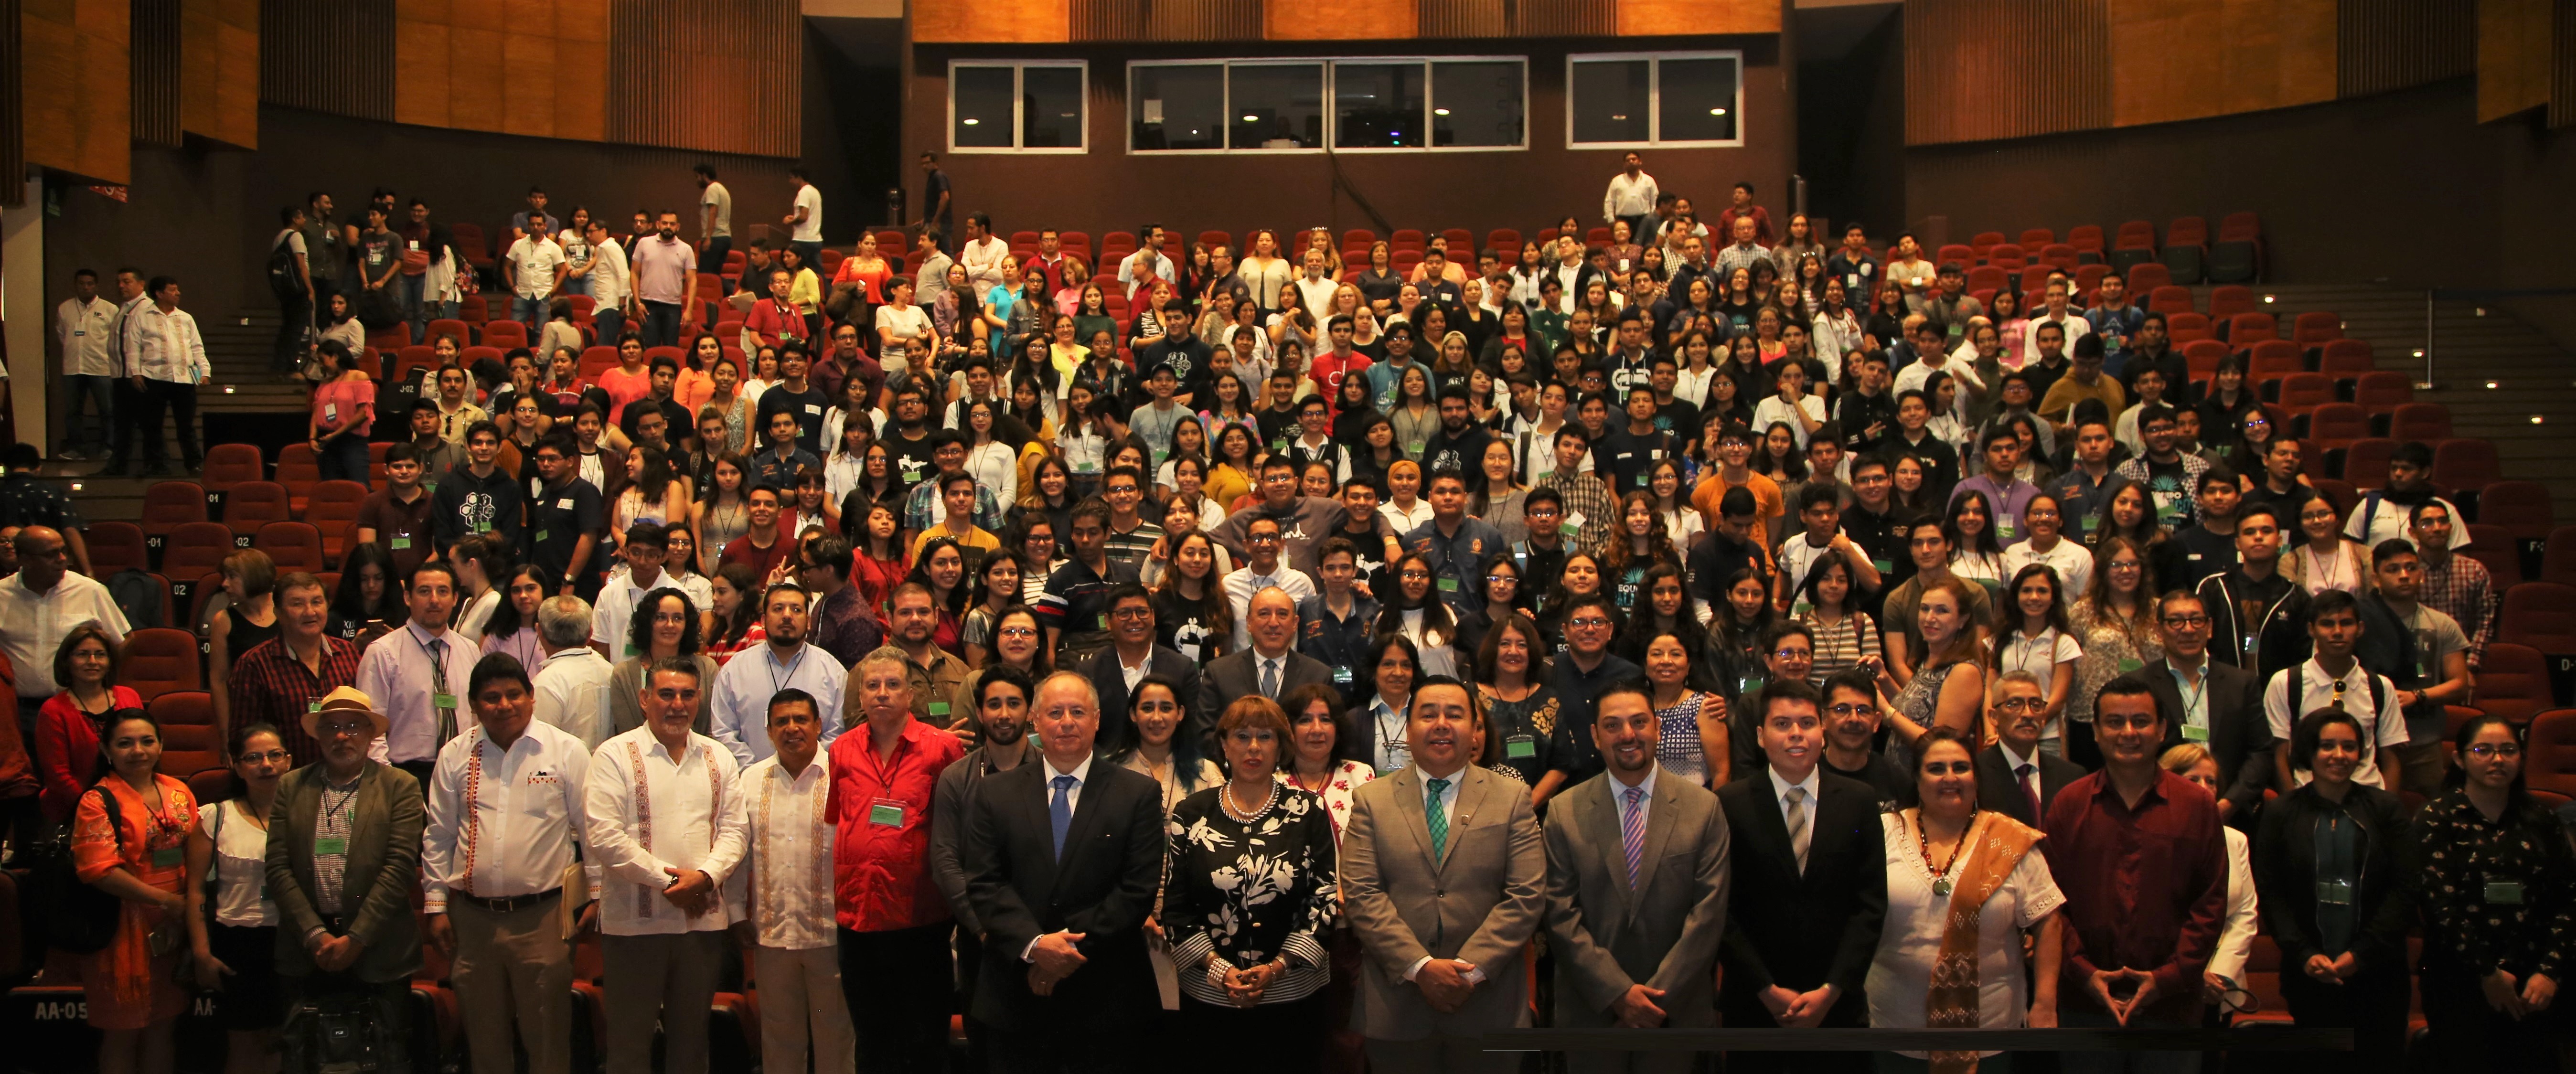 La ceremonia de inauguración de la XXIX Olimpiada Nacional de Biología se realizó hoy en el auditorio Juan Sabines de la Universidad de Ciencias y Artes de Chiapas. Participan 172 estudiantes de nivel medio superior, 88 mujeres, 84 hombres, provenientes de 29 estados del país.